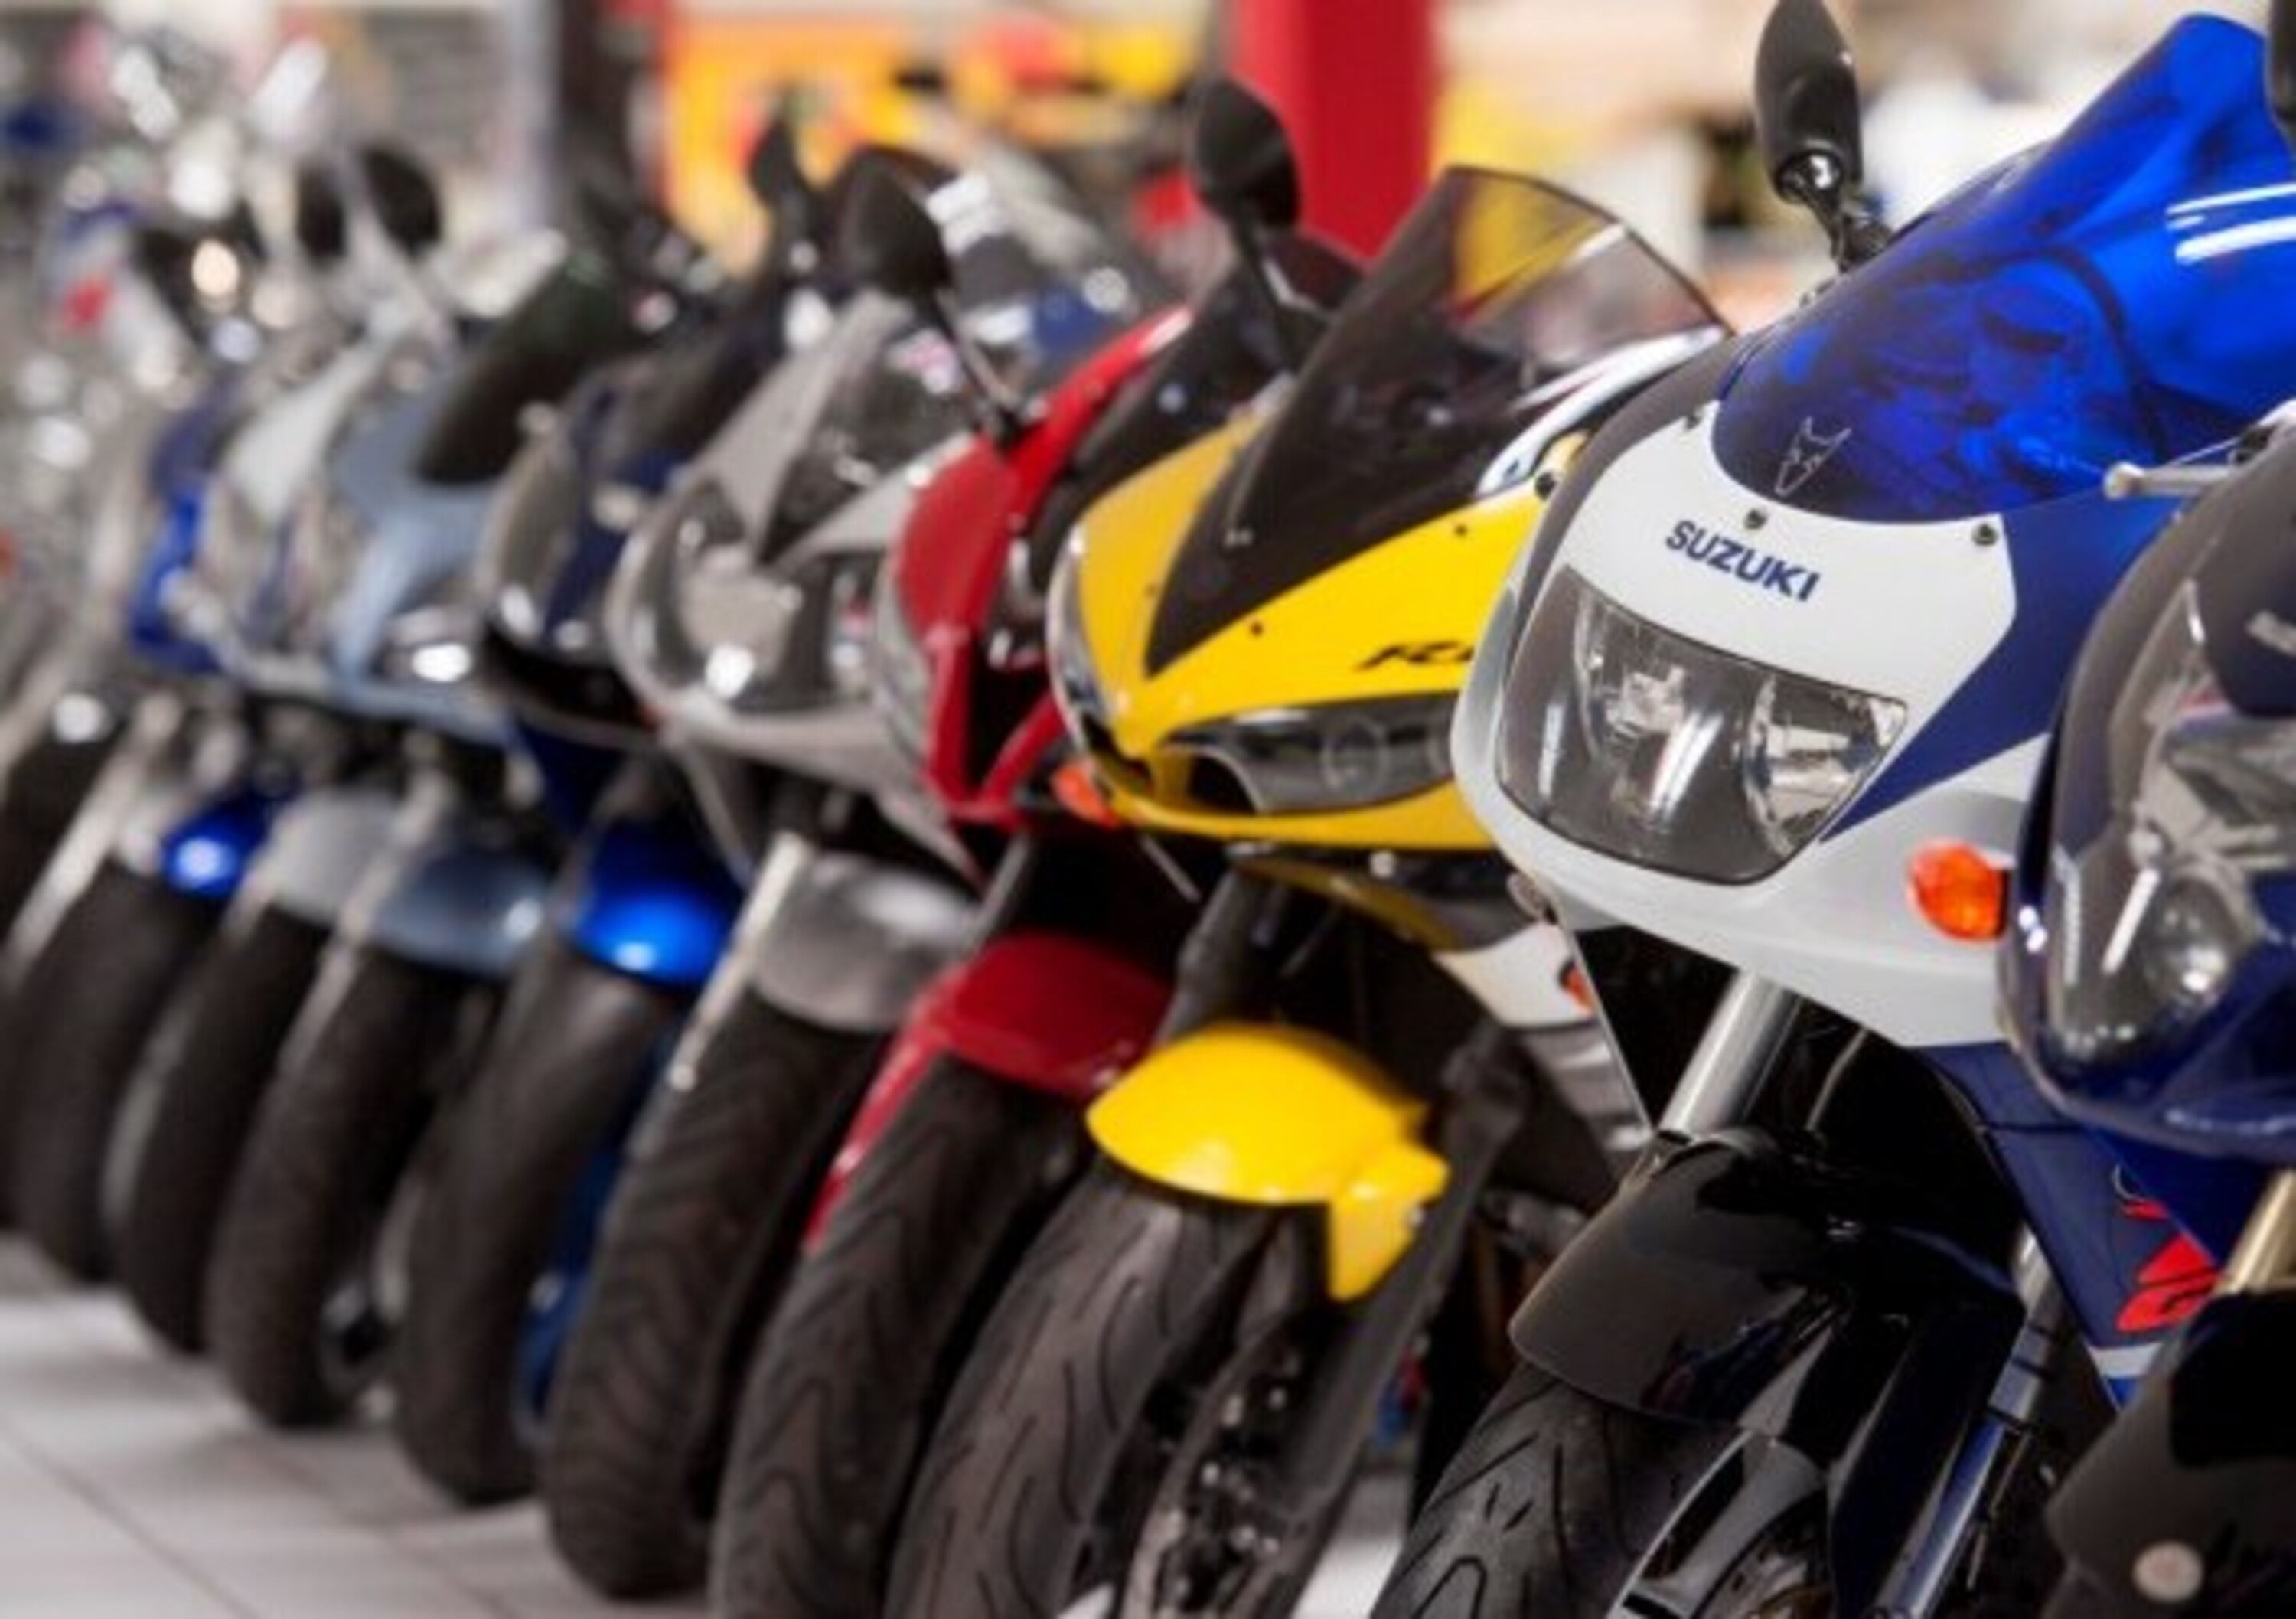 Usato: nel 2019 vendite stabili per moto e scooter